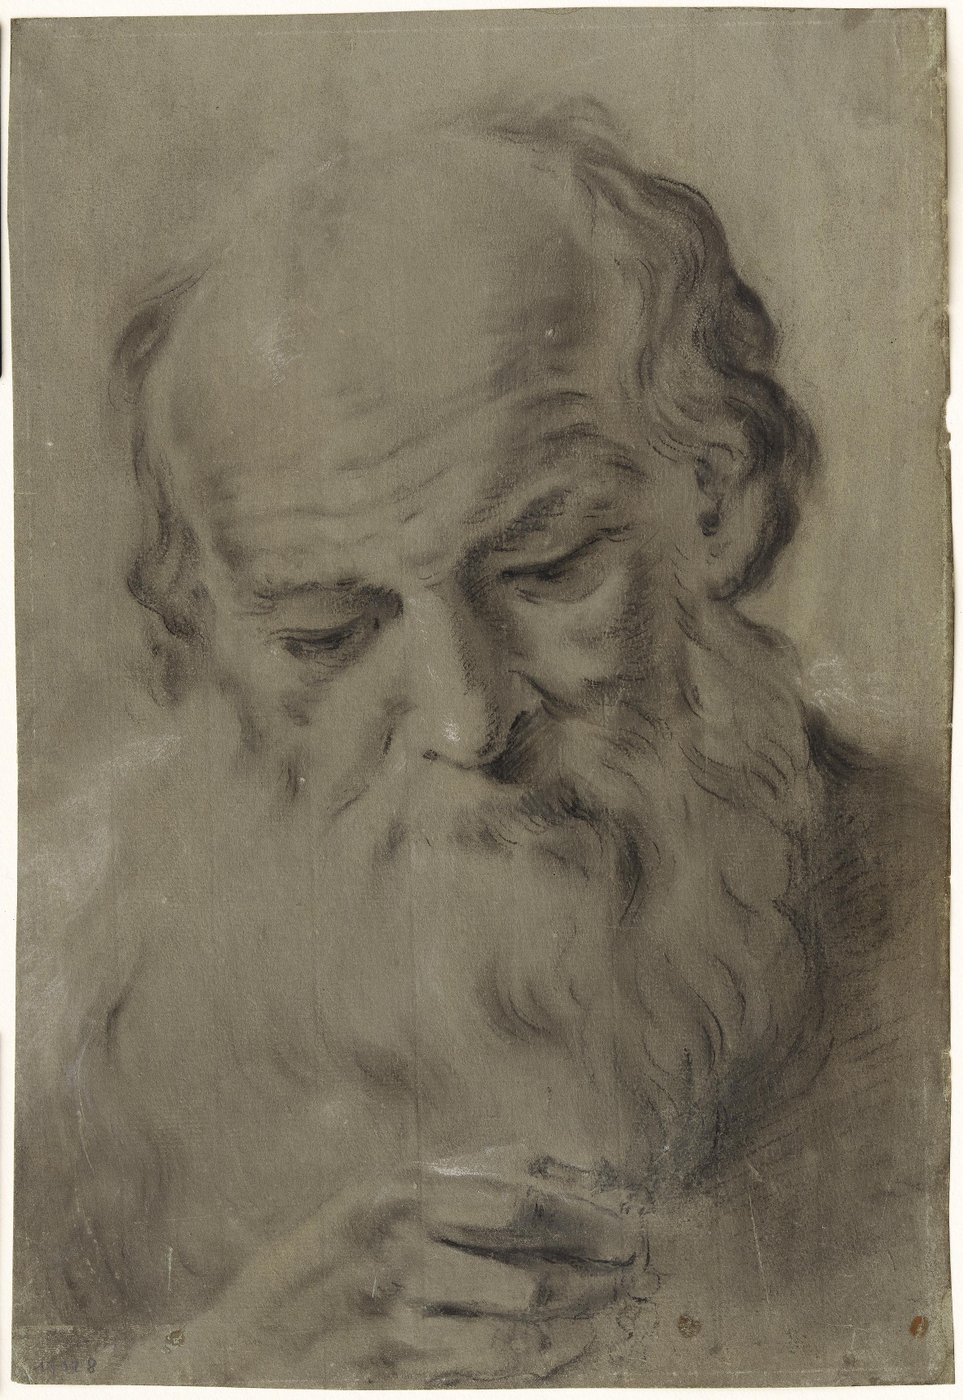 Zeichnung eines alten Mannes mit Bart, er blickt hinab auf seine halb geschlossene Hand.